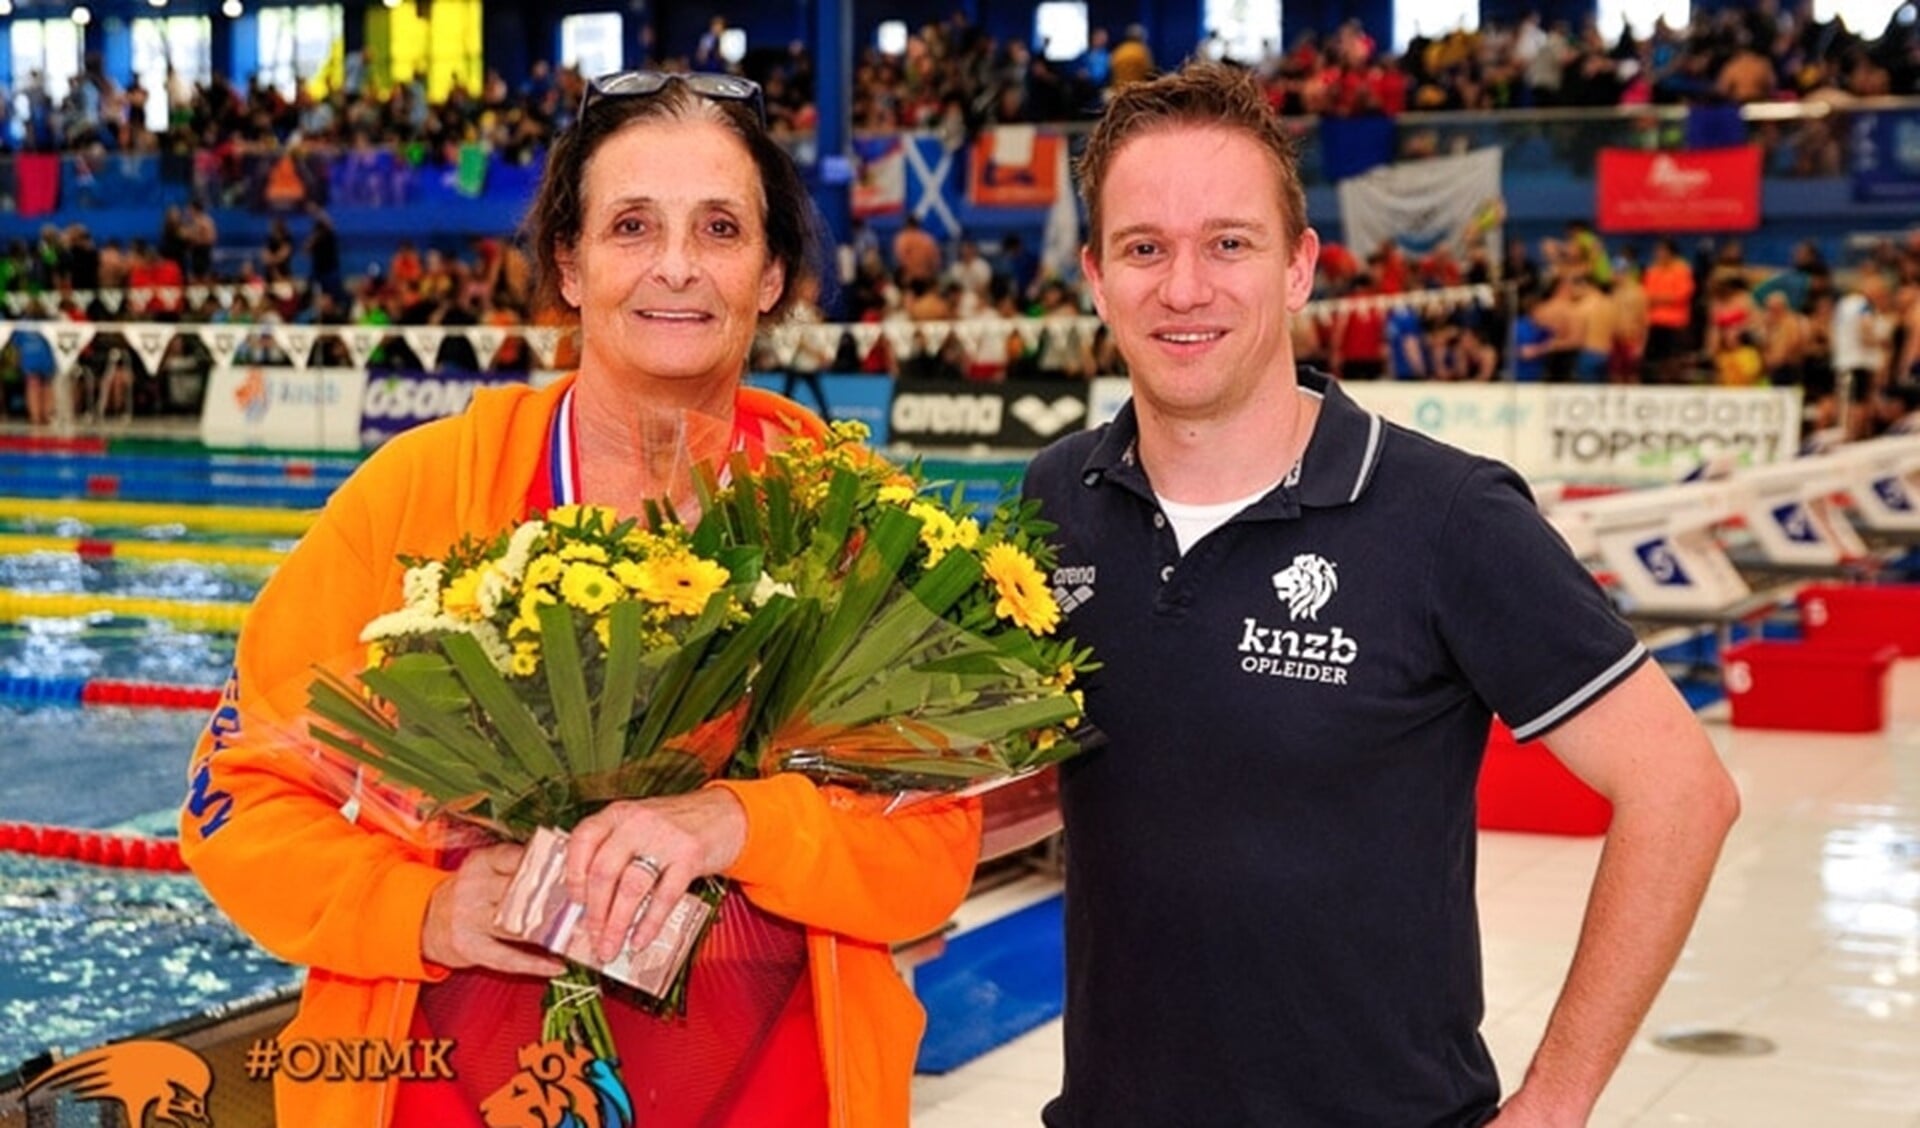 Zwemveterane Connie Boer uit Rockanje was weer heel succesvol op de ONK zwemmen voor Masters.